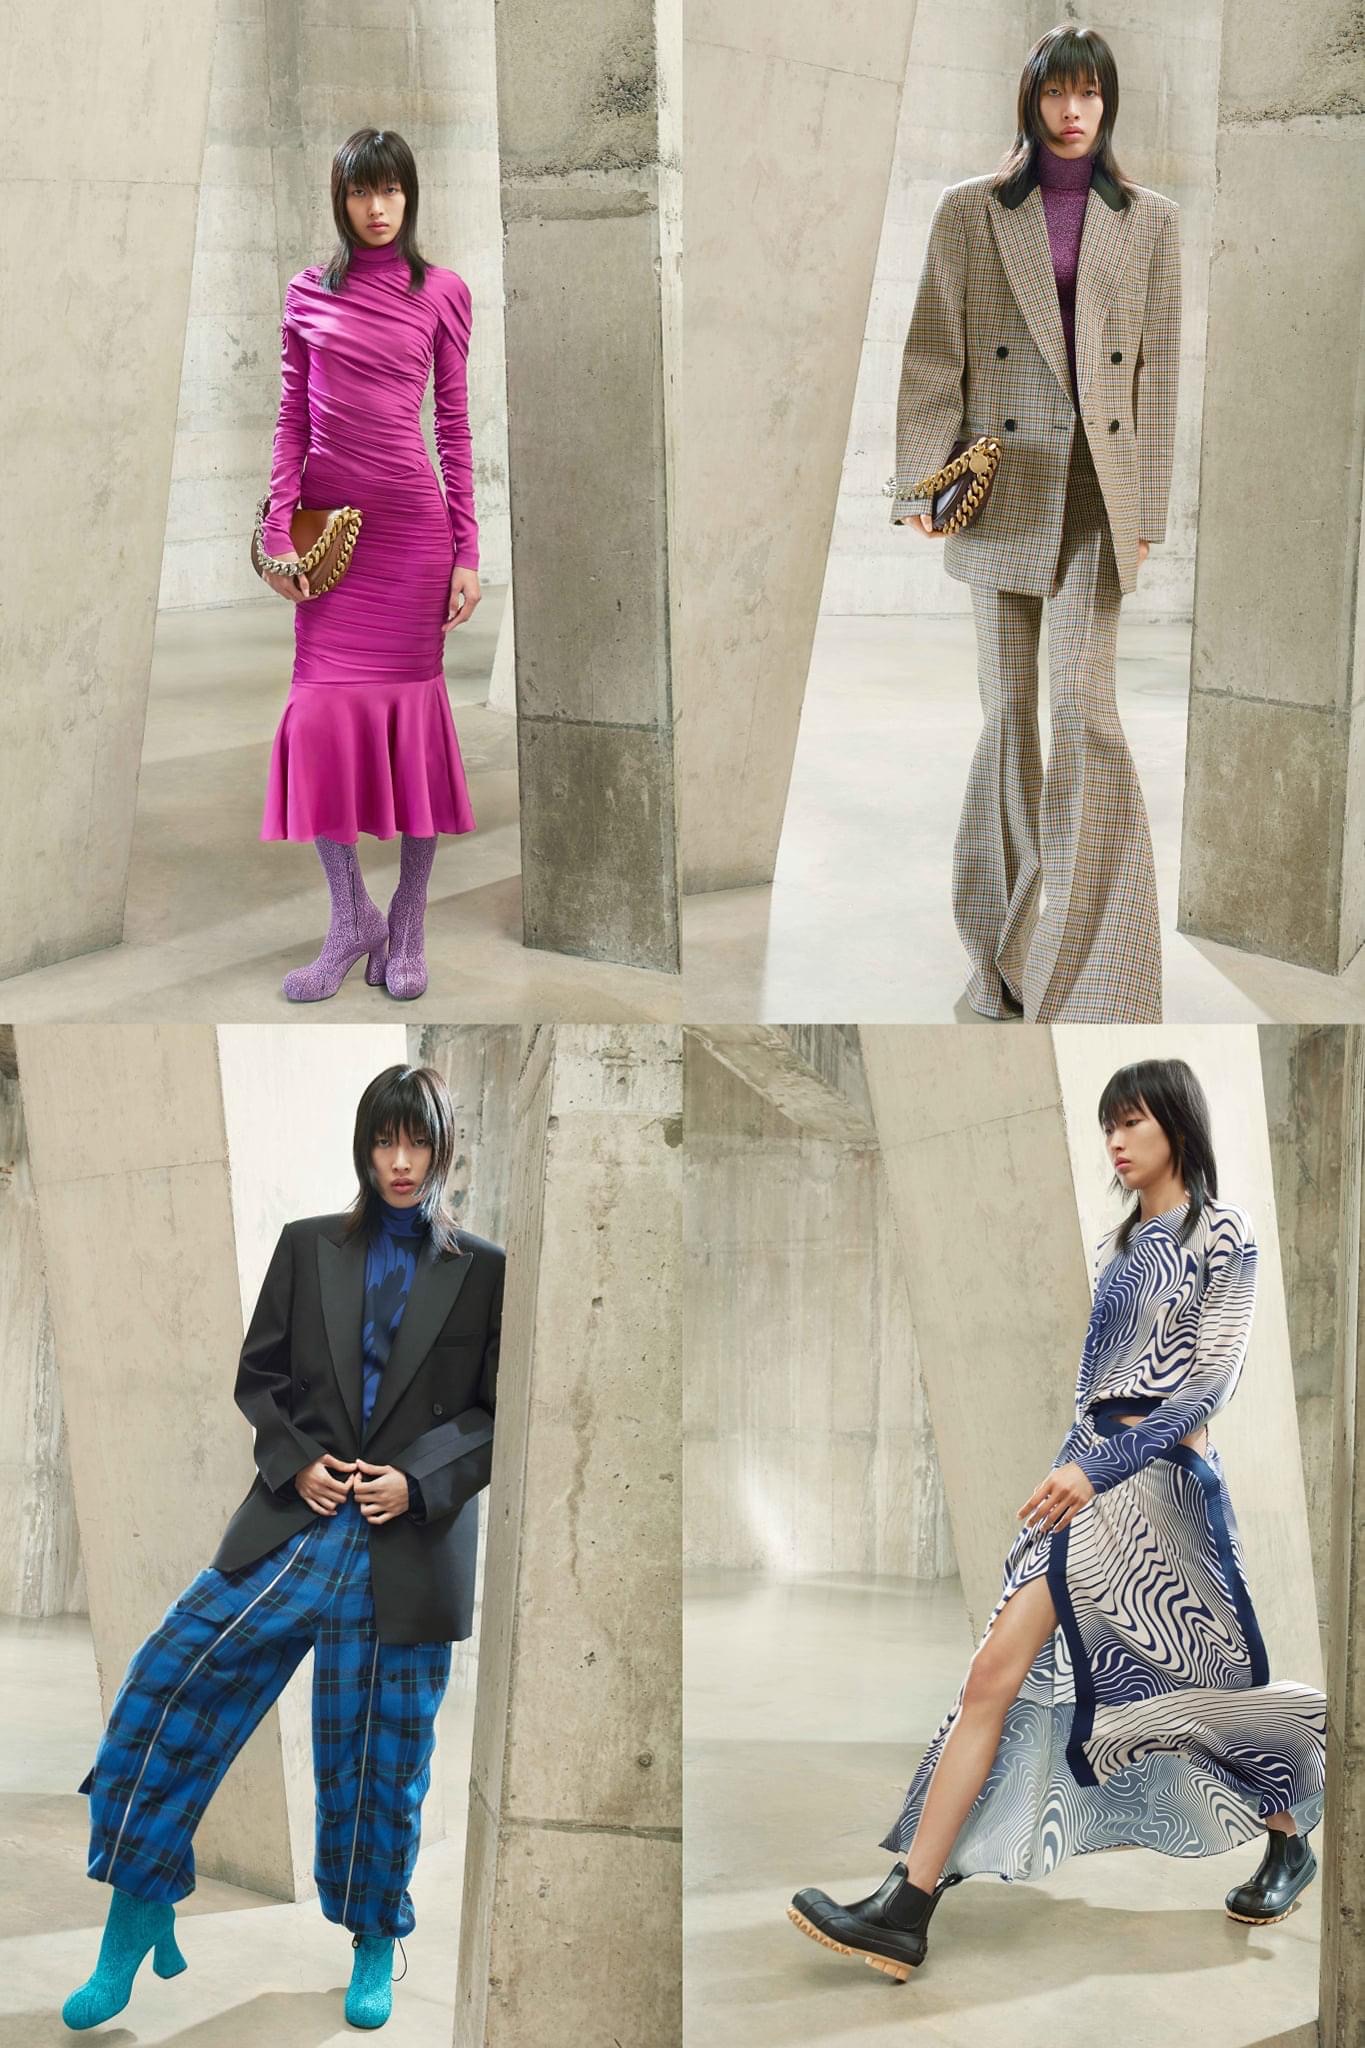 Phương Oanh làm người mẫu cho show của NTK Stella McCartney với 4 bộ trang phục.